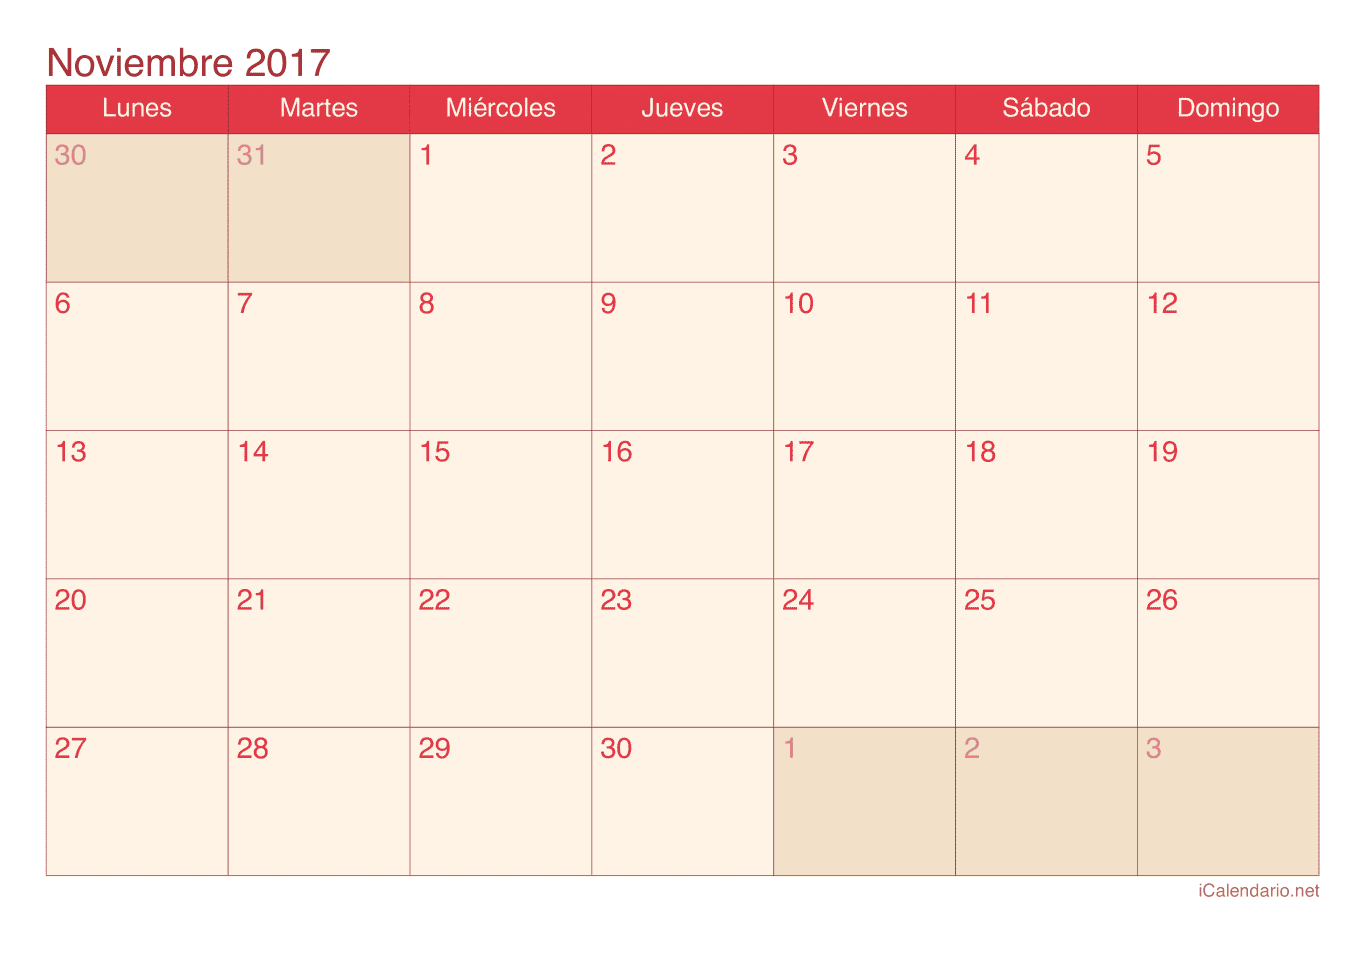 Calendario de noviembre 2017 - Cherry